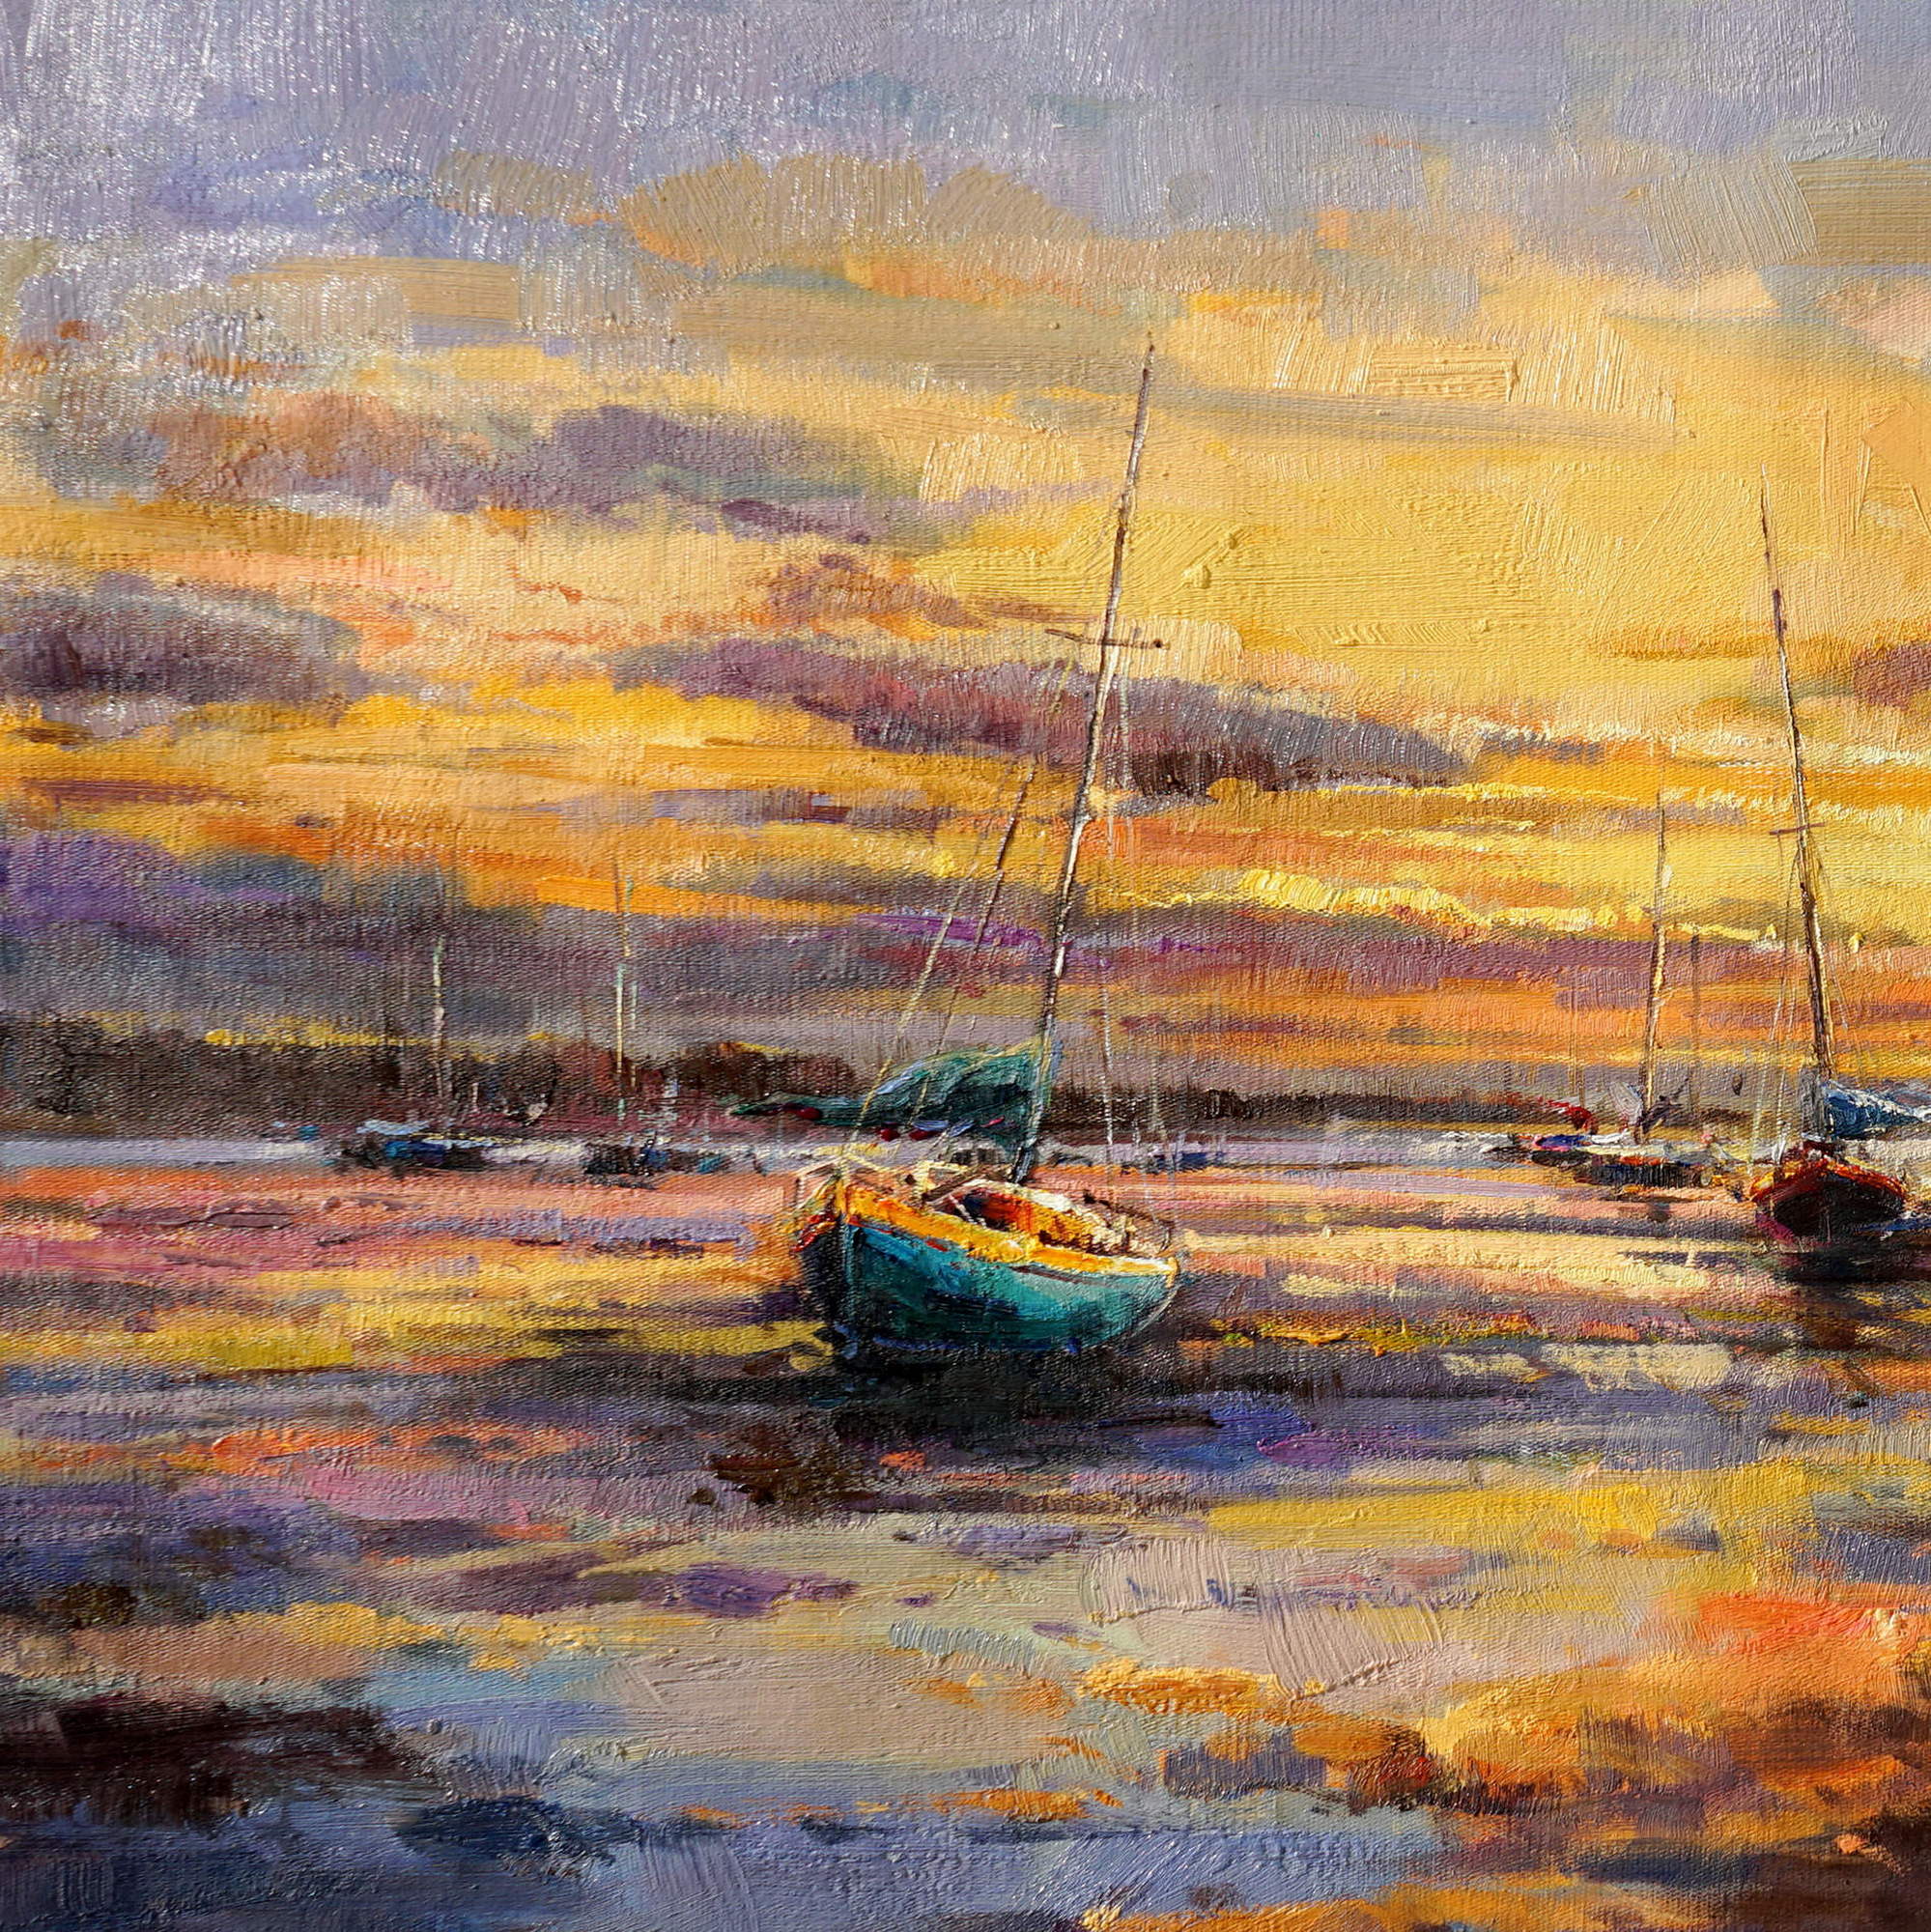 Hand painted Marina at sunset Sailboats 60x120cm